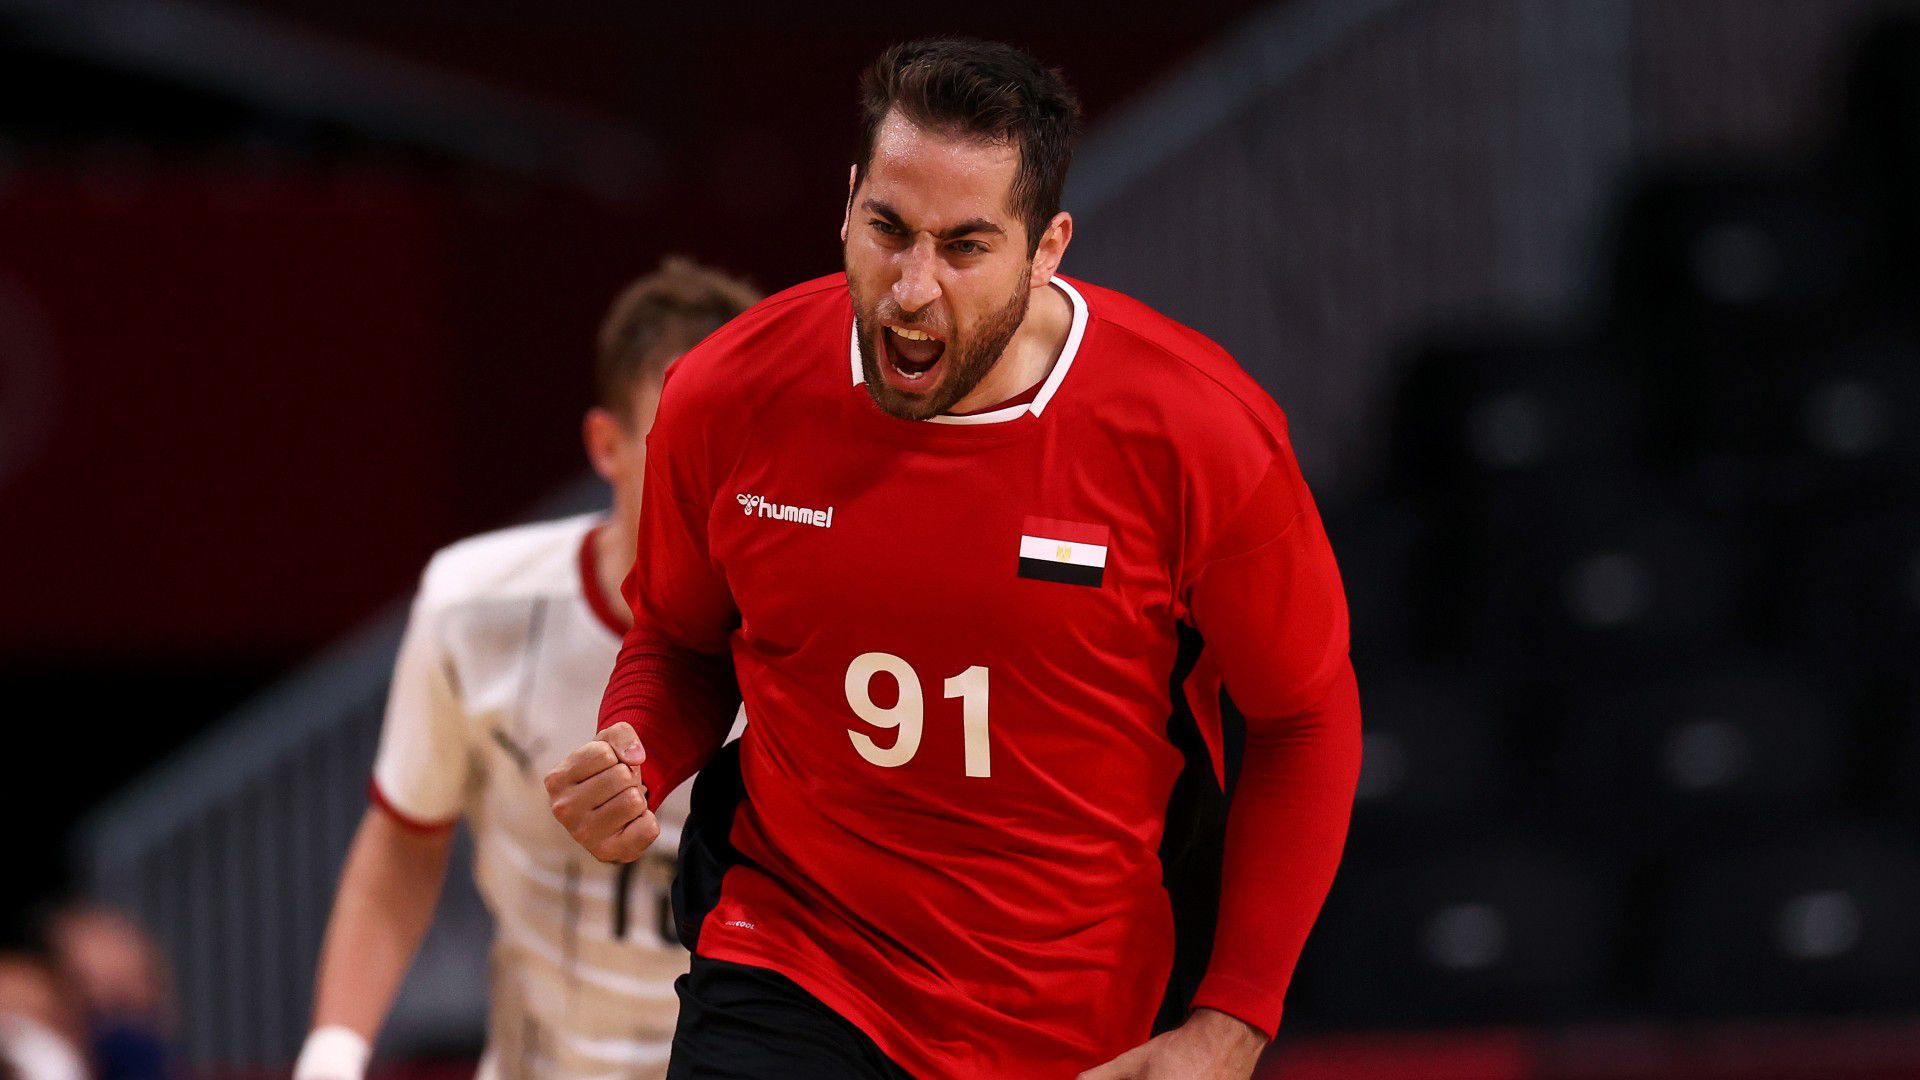 Egyiptom, Norvégia és Németország is negyeddöntős a férfi kézilabda-vb-n